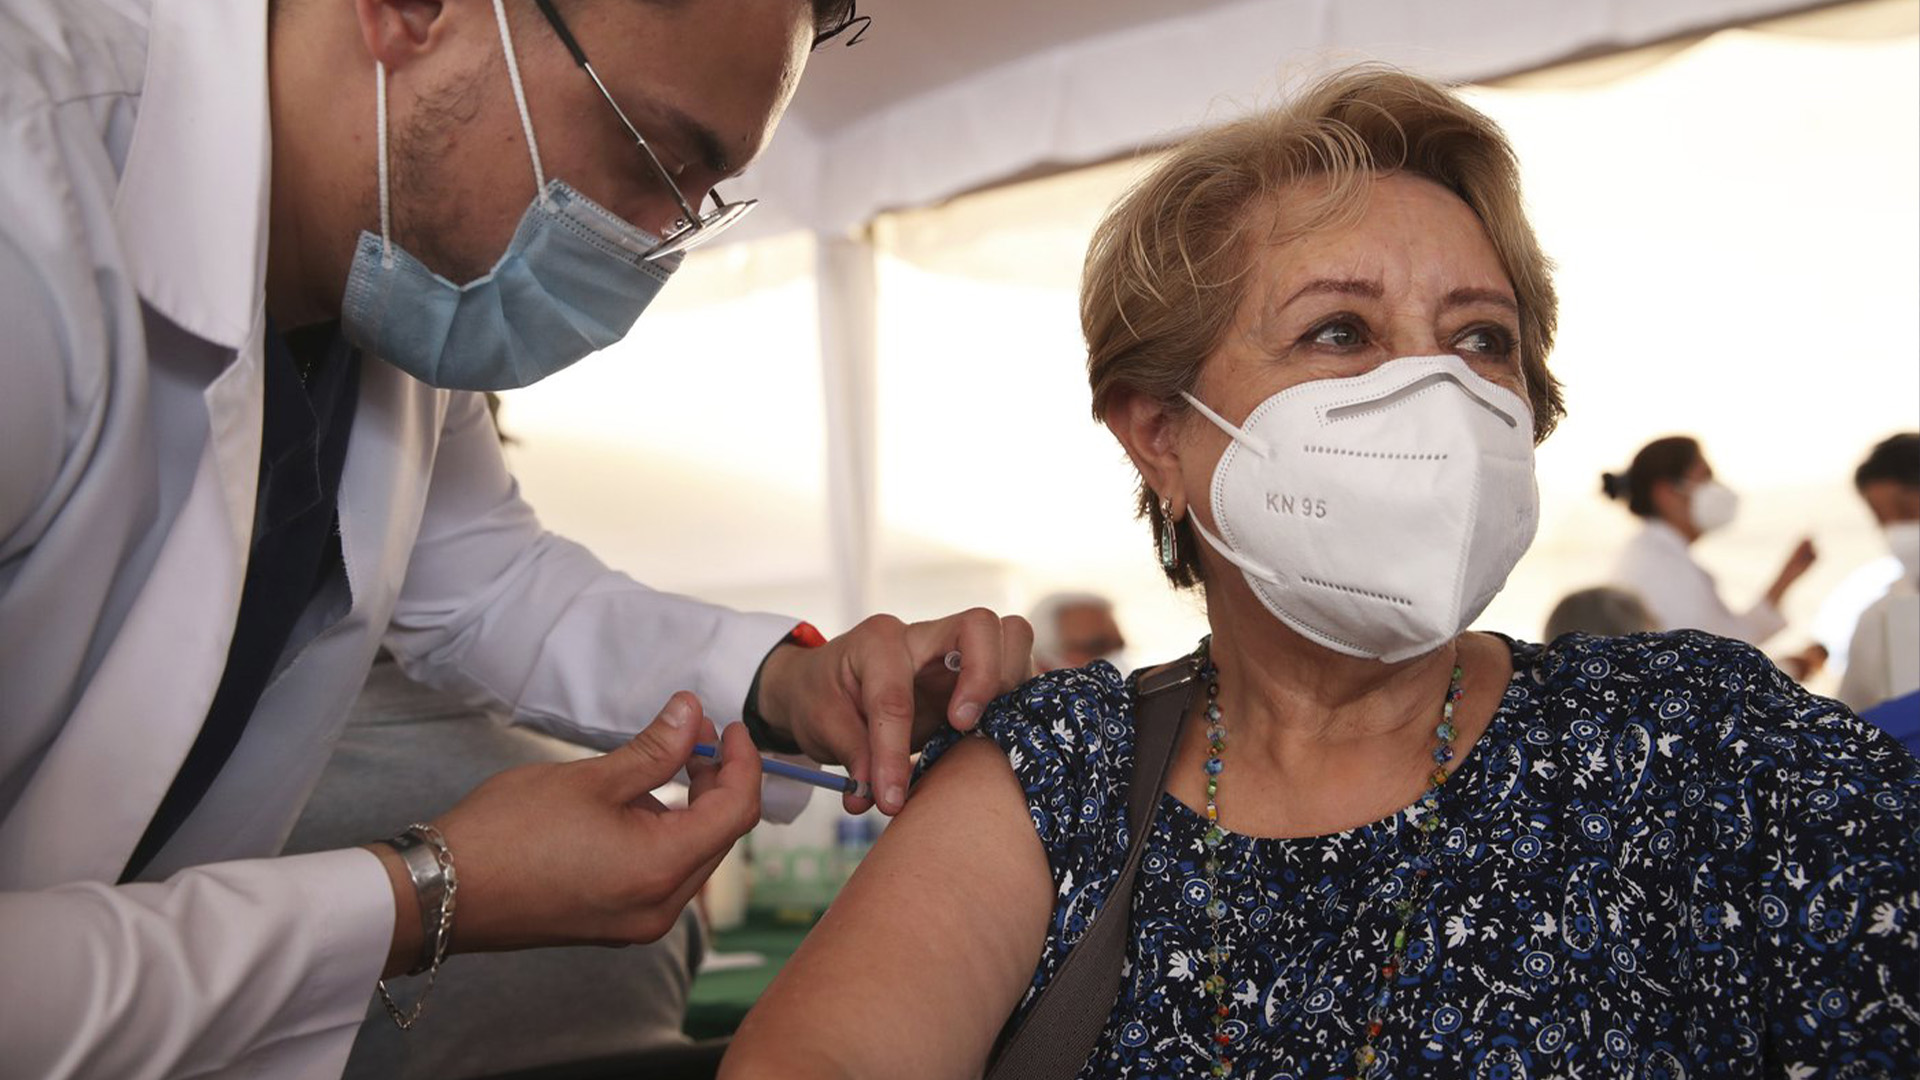 Un agent de santé inocule à une femme la deuxième dose du vaccin AstraZeneca COVID-19, lors d'une campagne de vaccination pour les personnes de plus de 60 ans, au stade olympique universitaire de Mexico, le lundi 12 avril 2021.